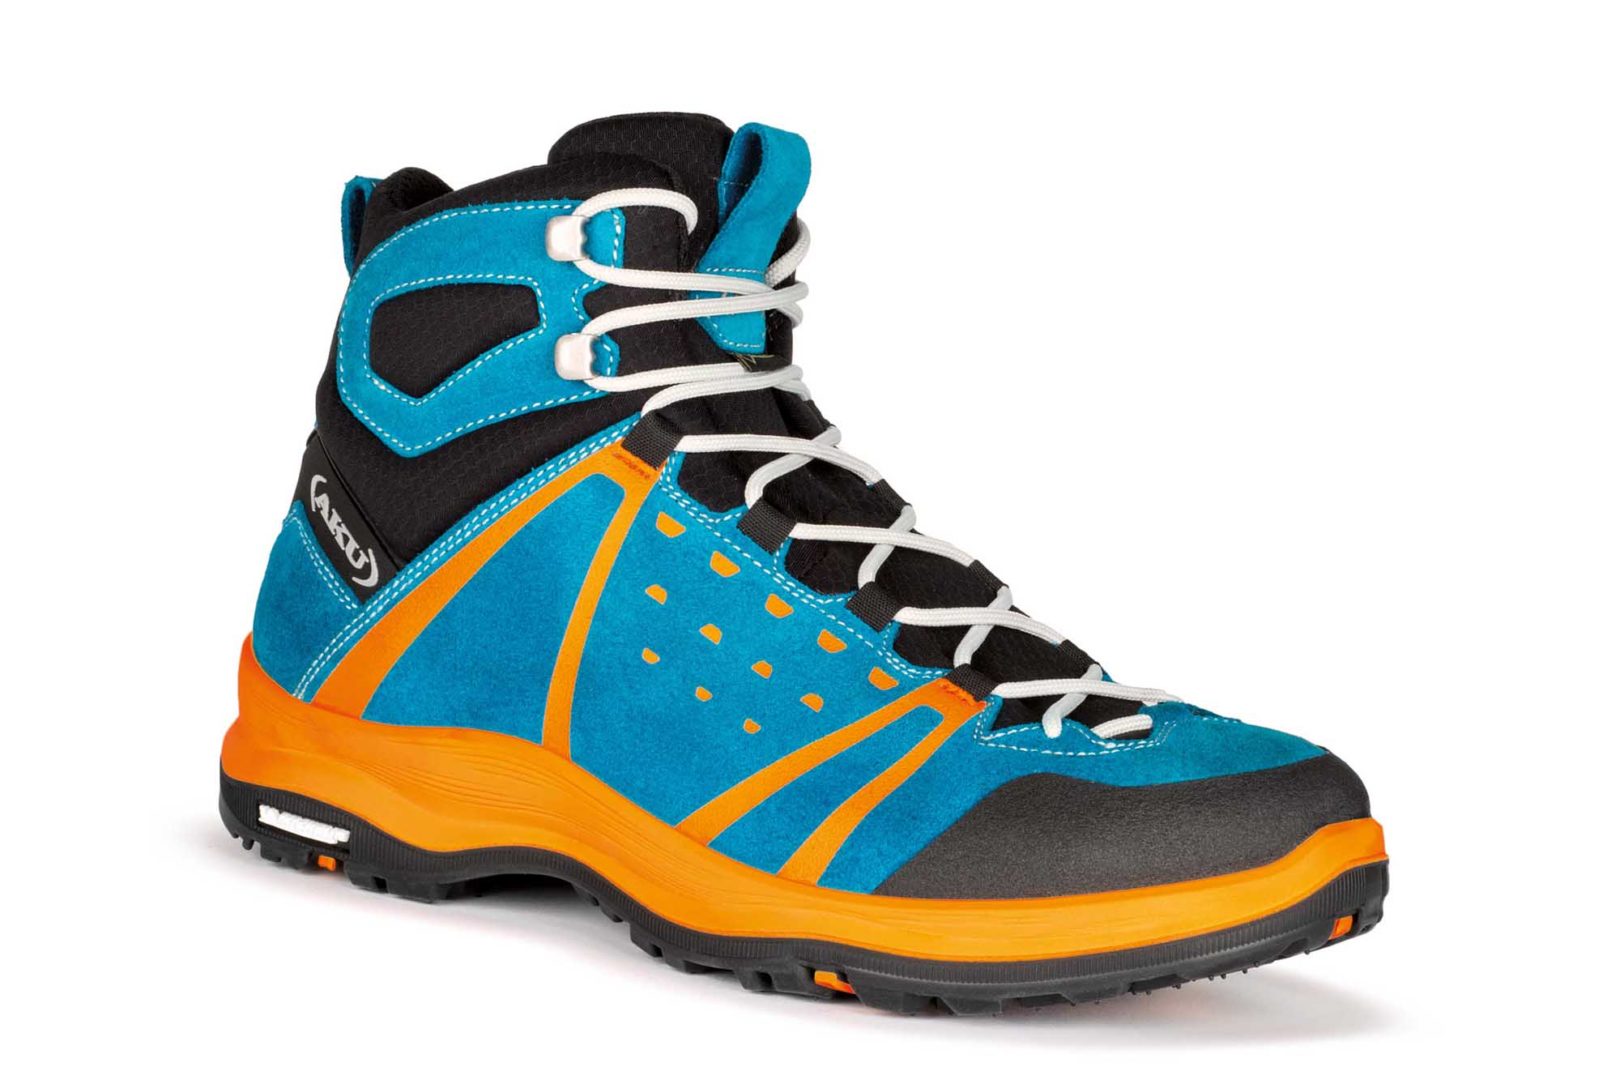 Michelin con Aku: ecco le scarpe per l'outdoor e il trekking urbano - QN  Motori